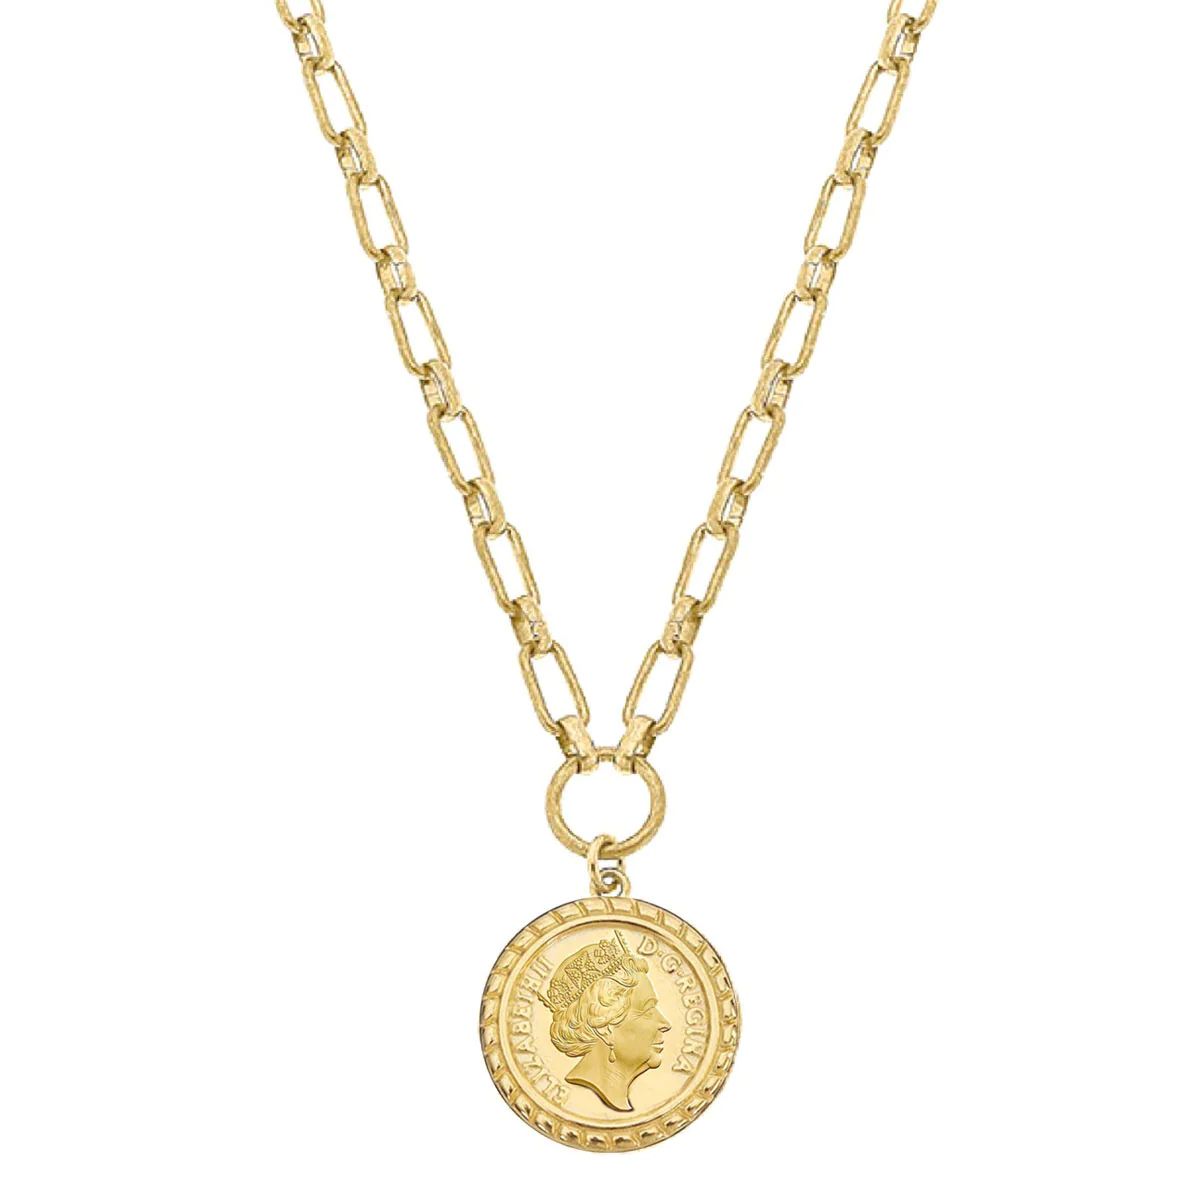 Queen Elizabeth Coin Necklace in Worn Gold | CANVAS